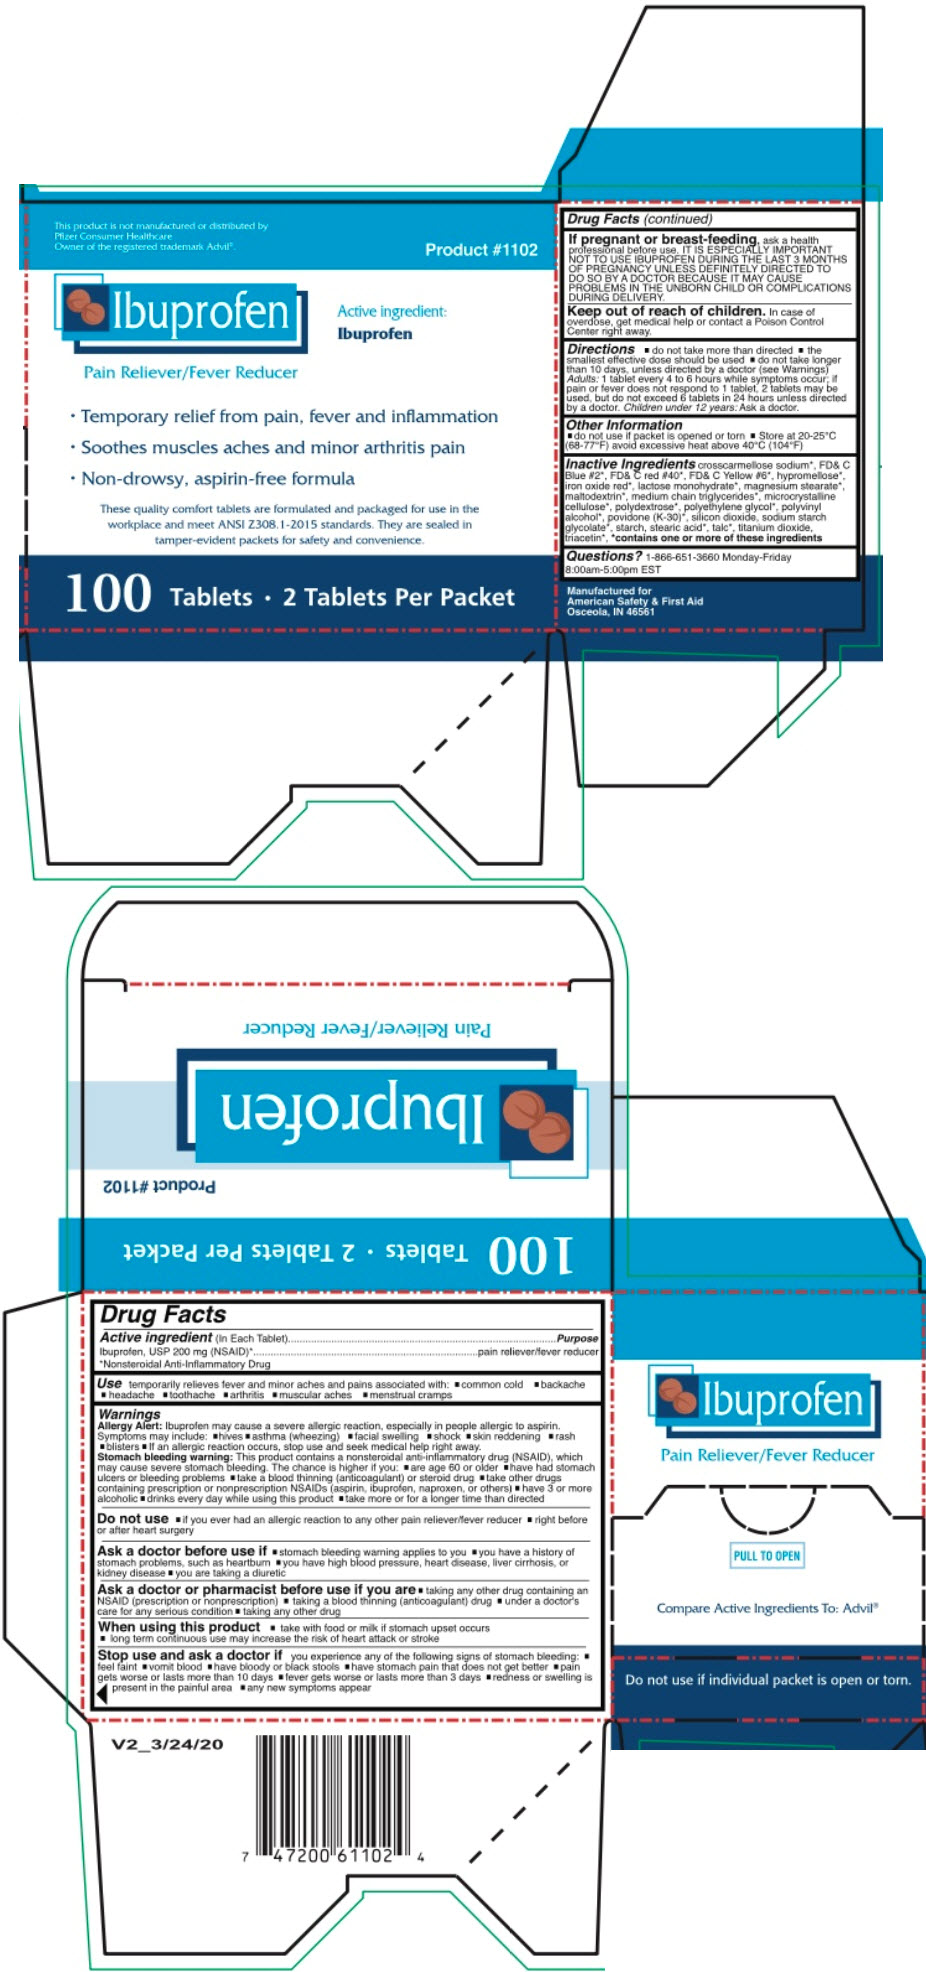 PRINCIPAL DISPLAY PANEL - 100 Tablet Packet Box